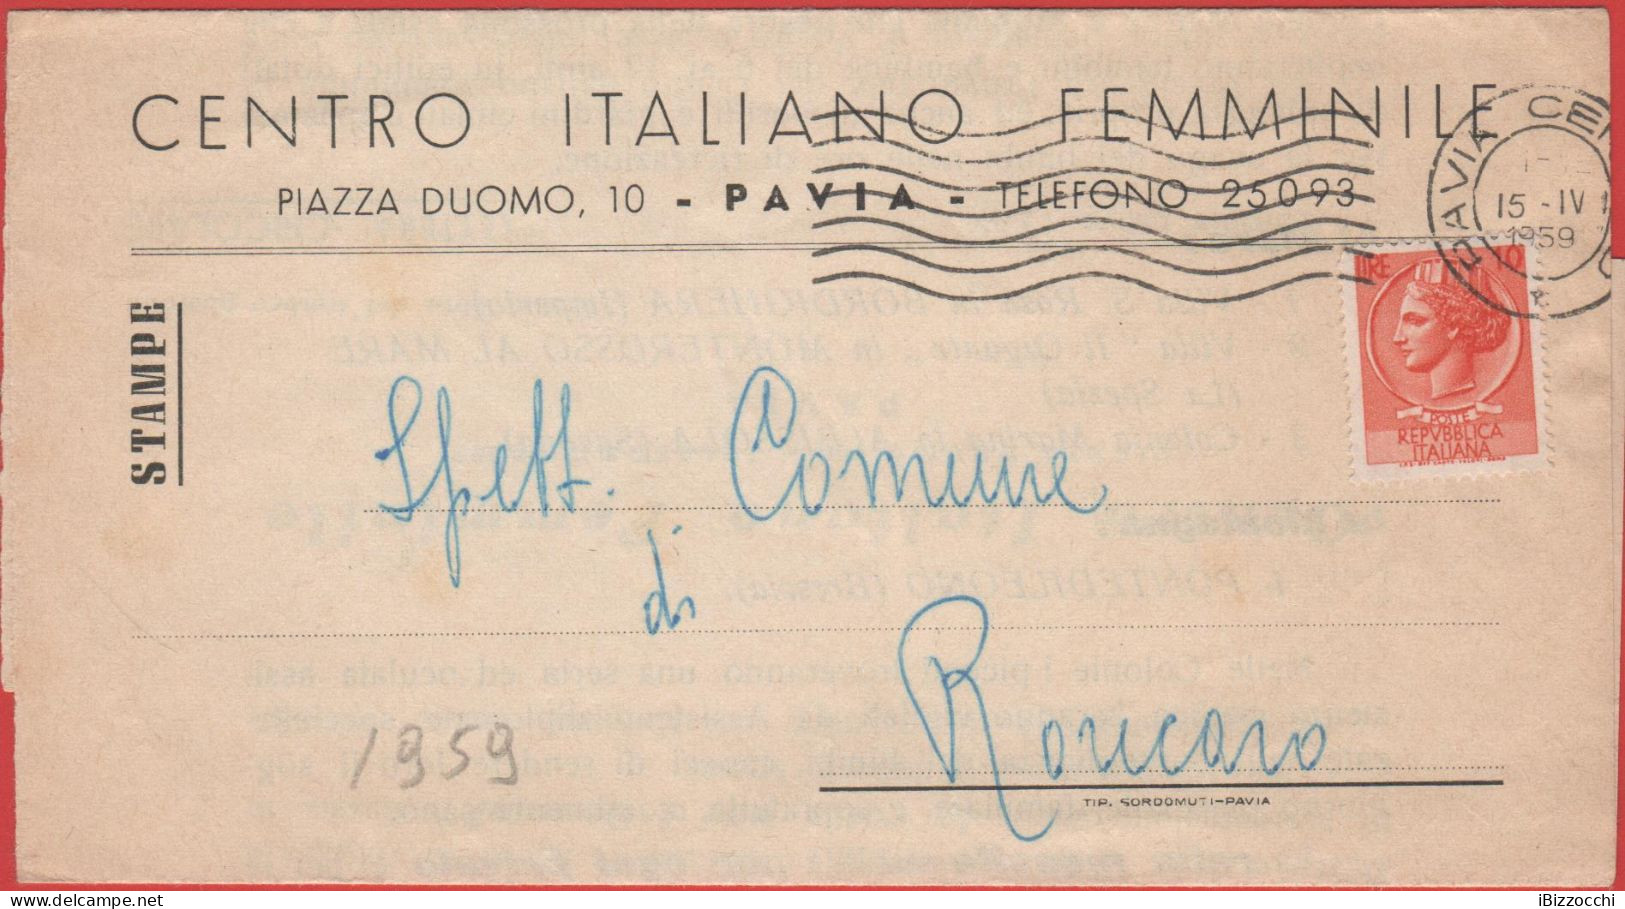 ITALIA - Storia Postale Repubblica - 1959 - 10 Antica Moneta Siracusana (isolato) - STAMPE - Centro Italiano Femminile - - 1946-60: Marcofilia